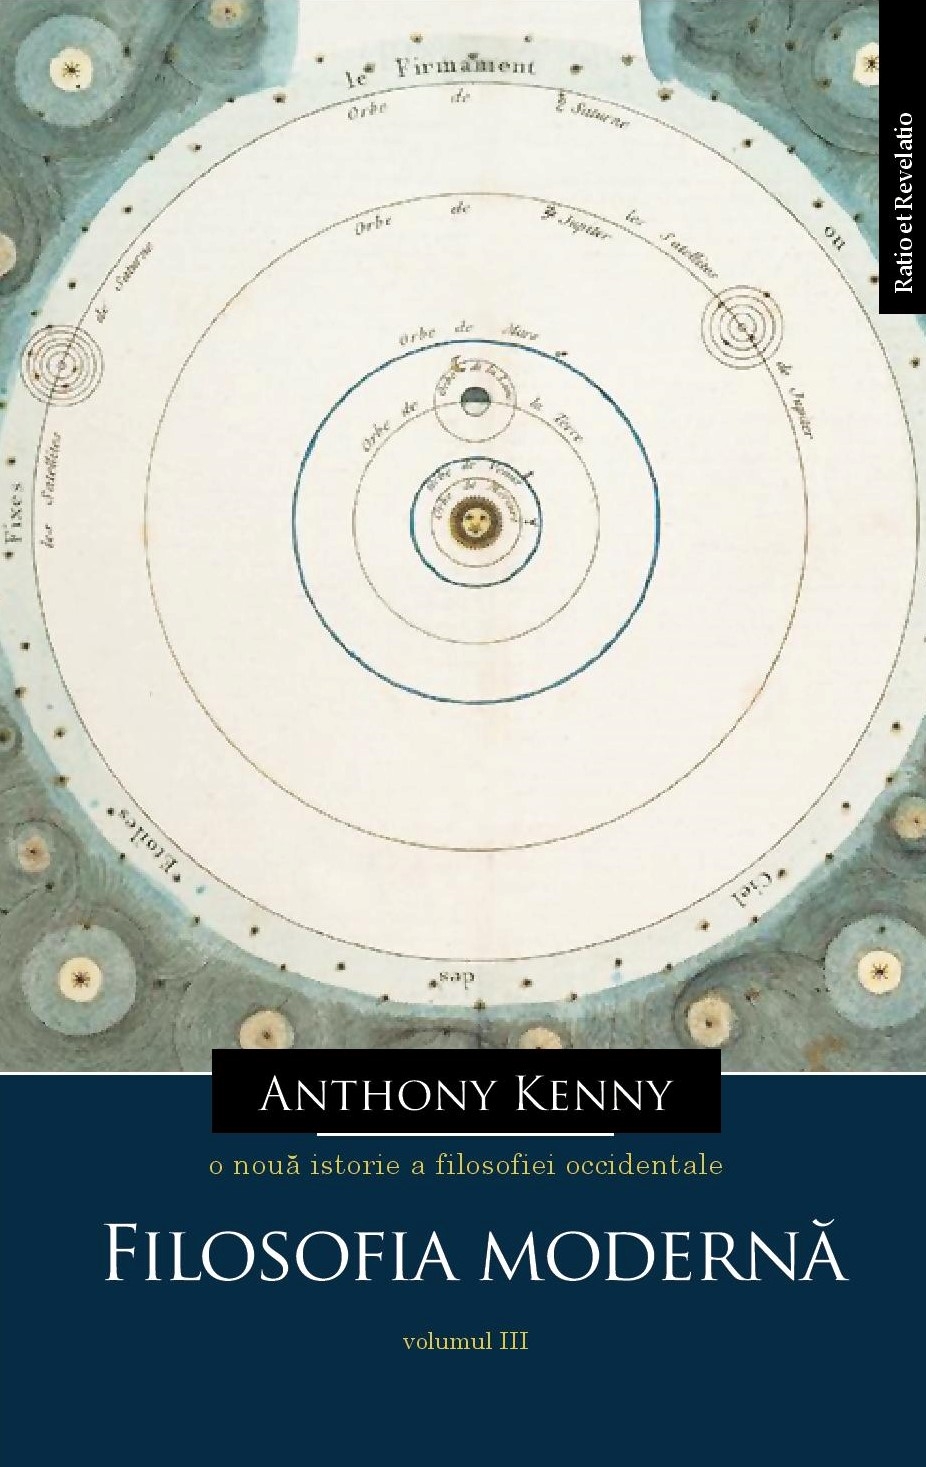 O noua istorie a filosofiei occidentale, volumul III